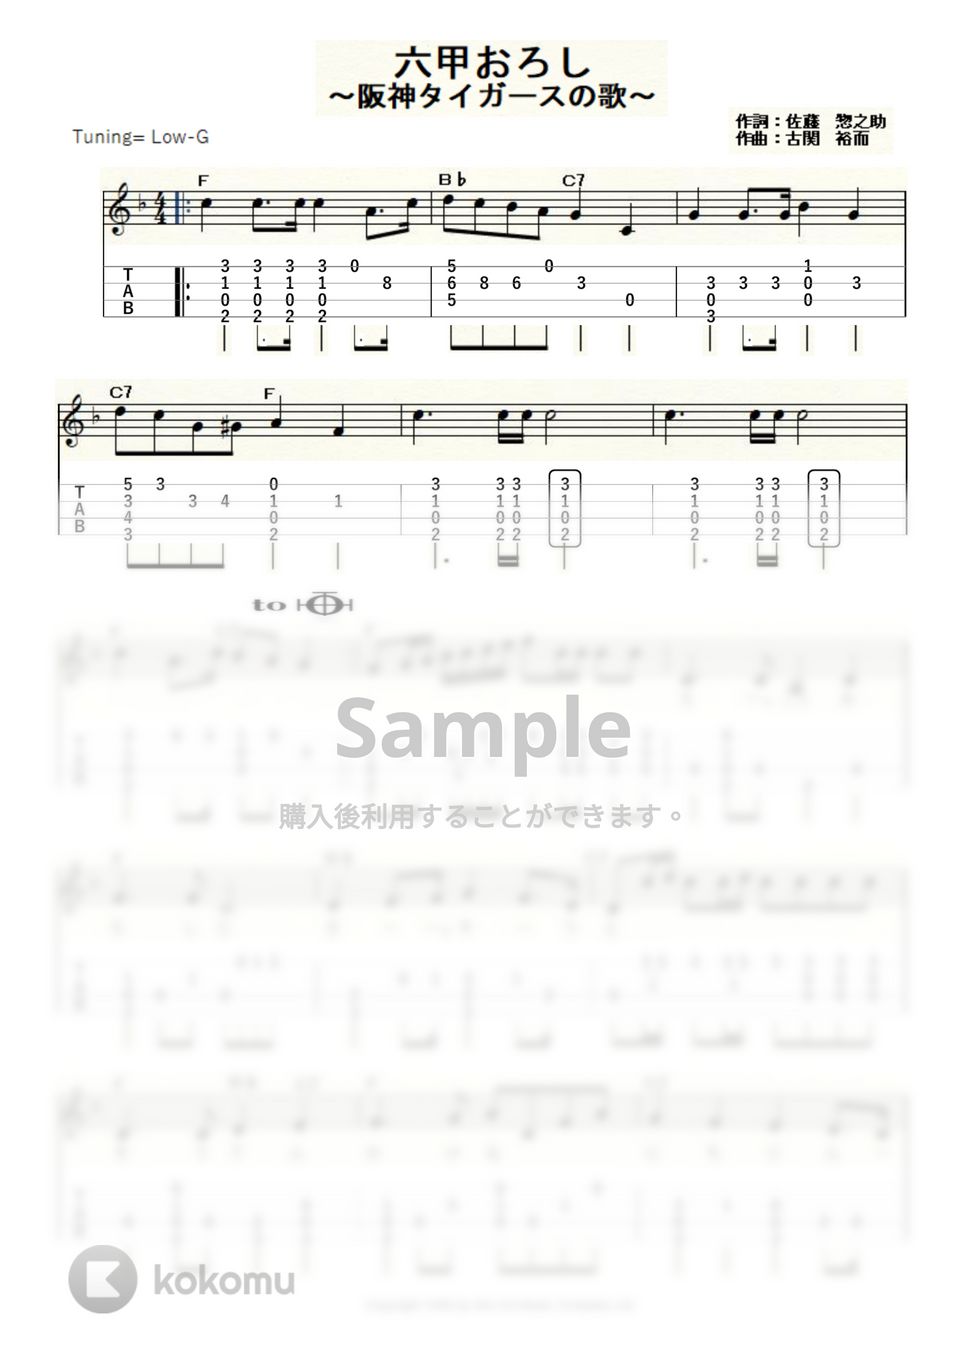 古関裕而 - 六甲おろし～阪神タイガースの歌～ (ｳｸﾚﾚｿﾛ/Low-G/中級) by ukulelepapa